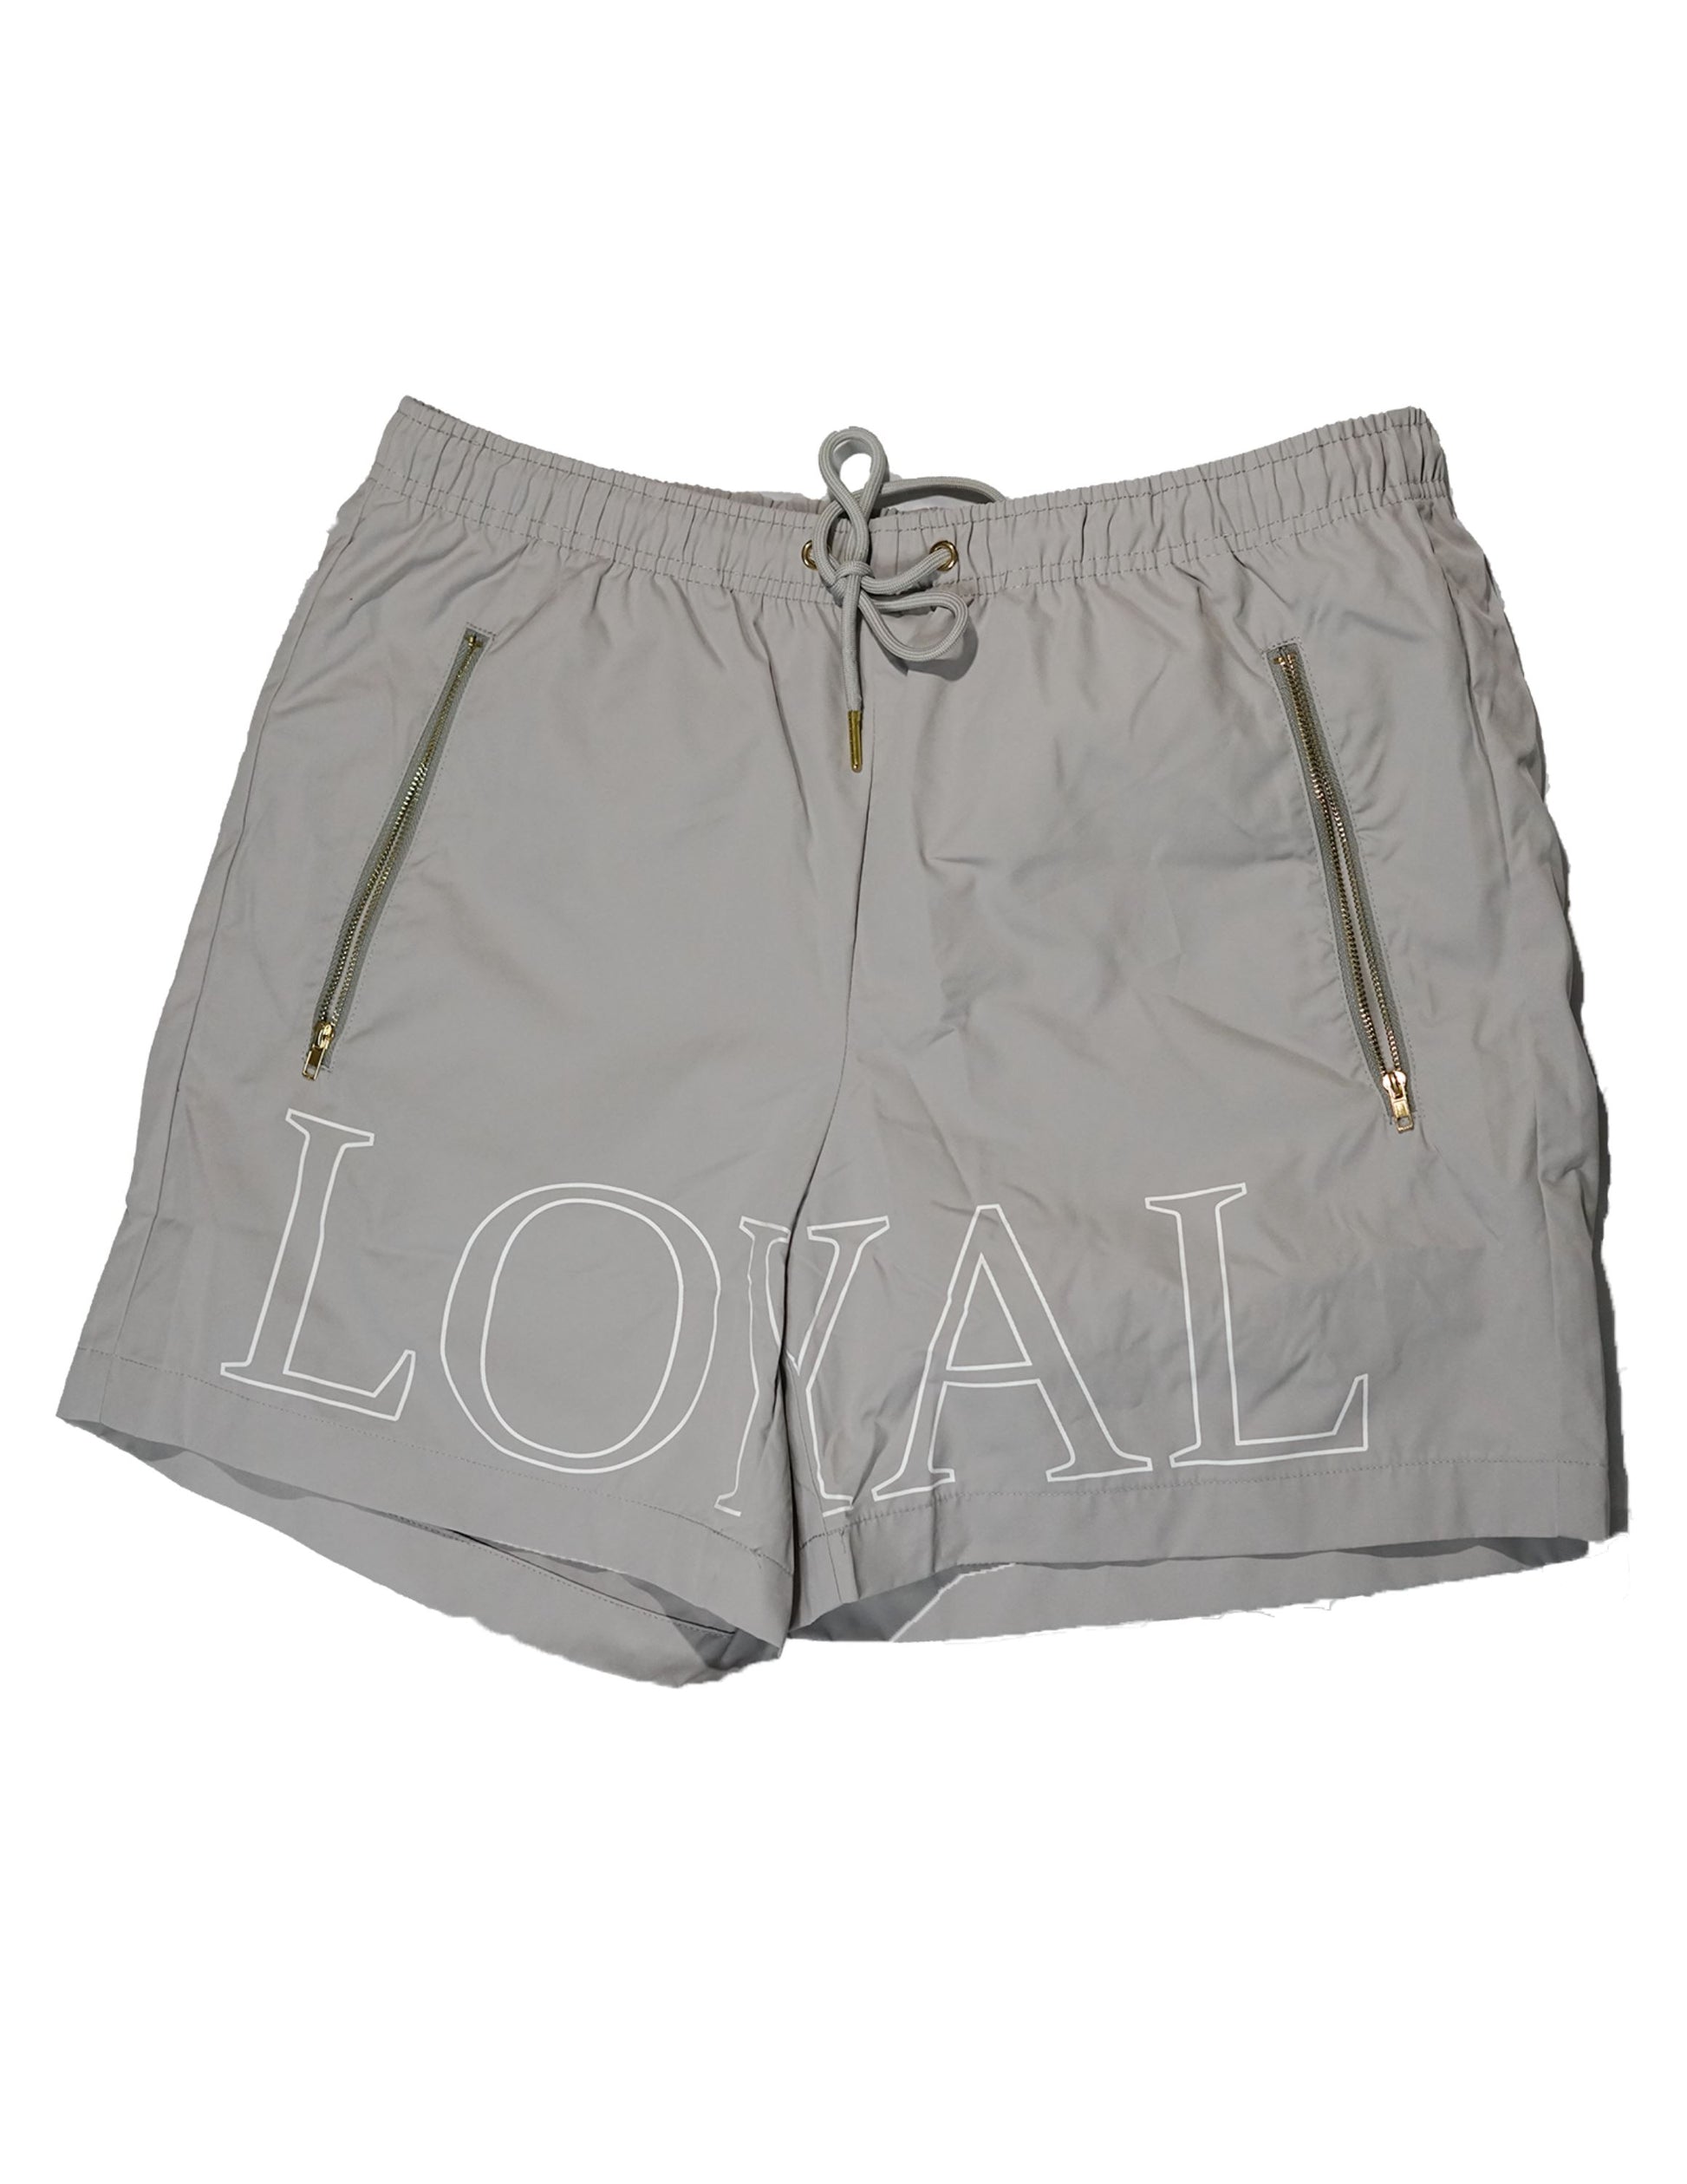 Loyal Shorts Shorts Forever Loyal Apparel 